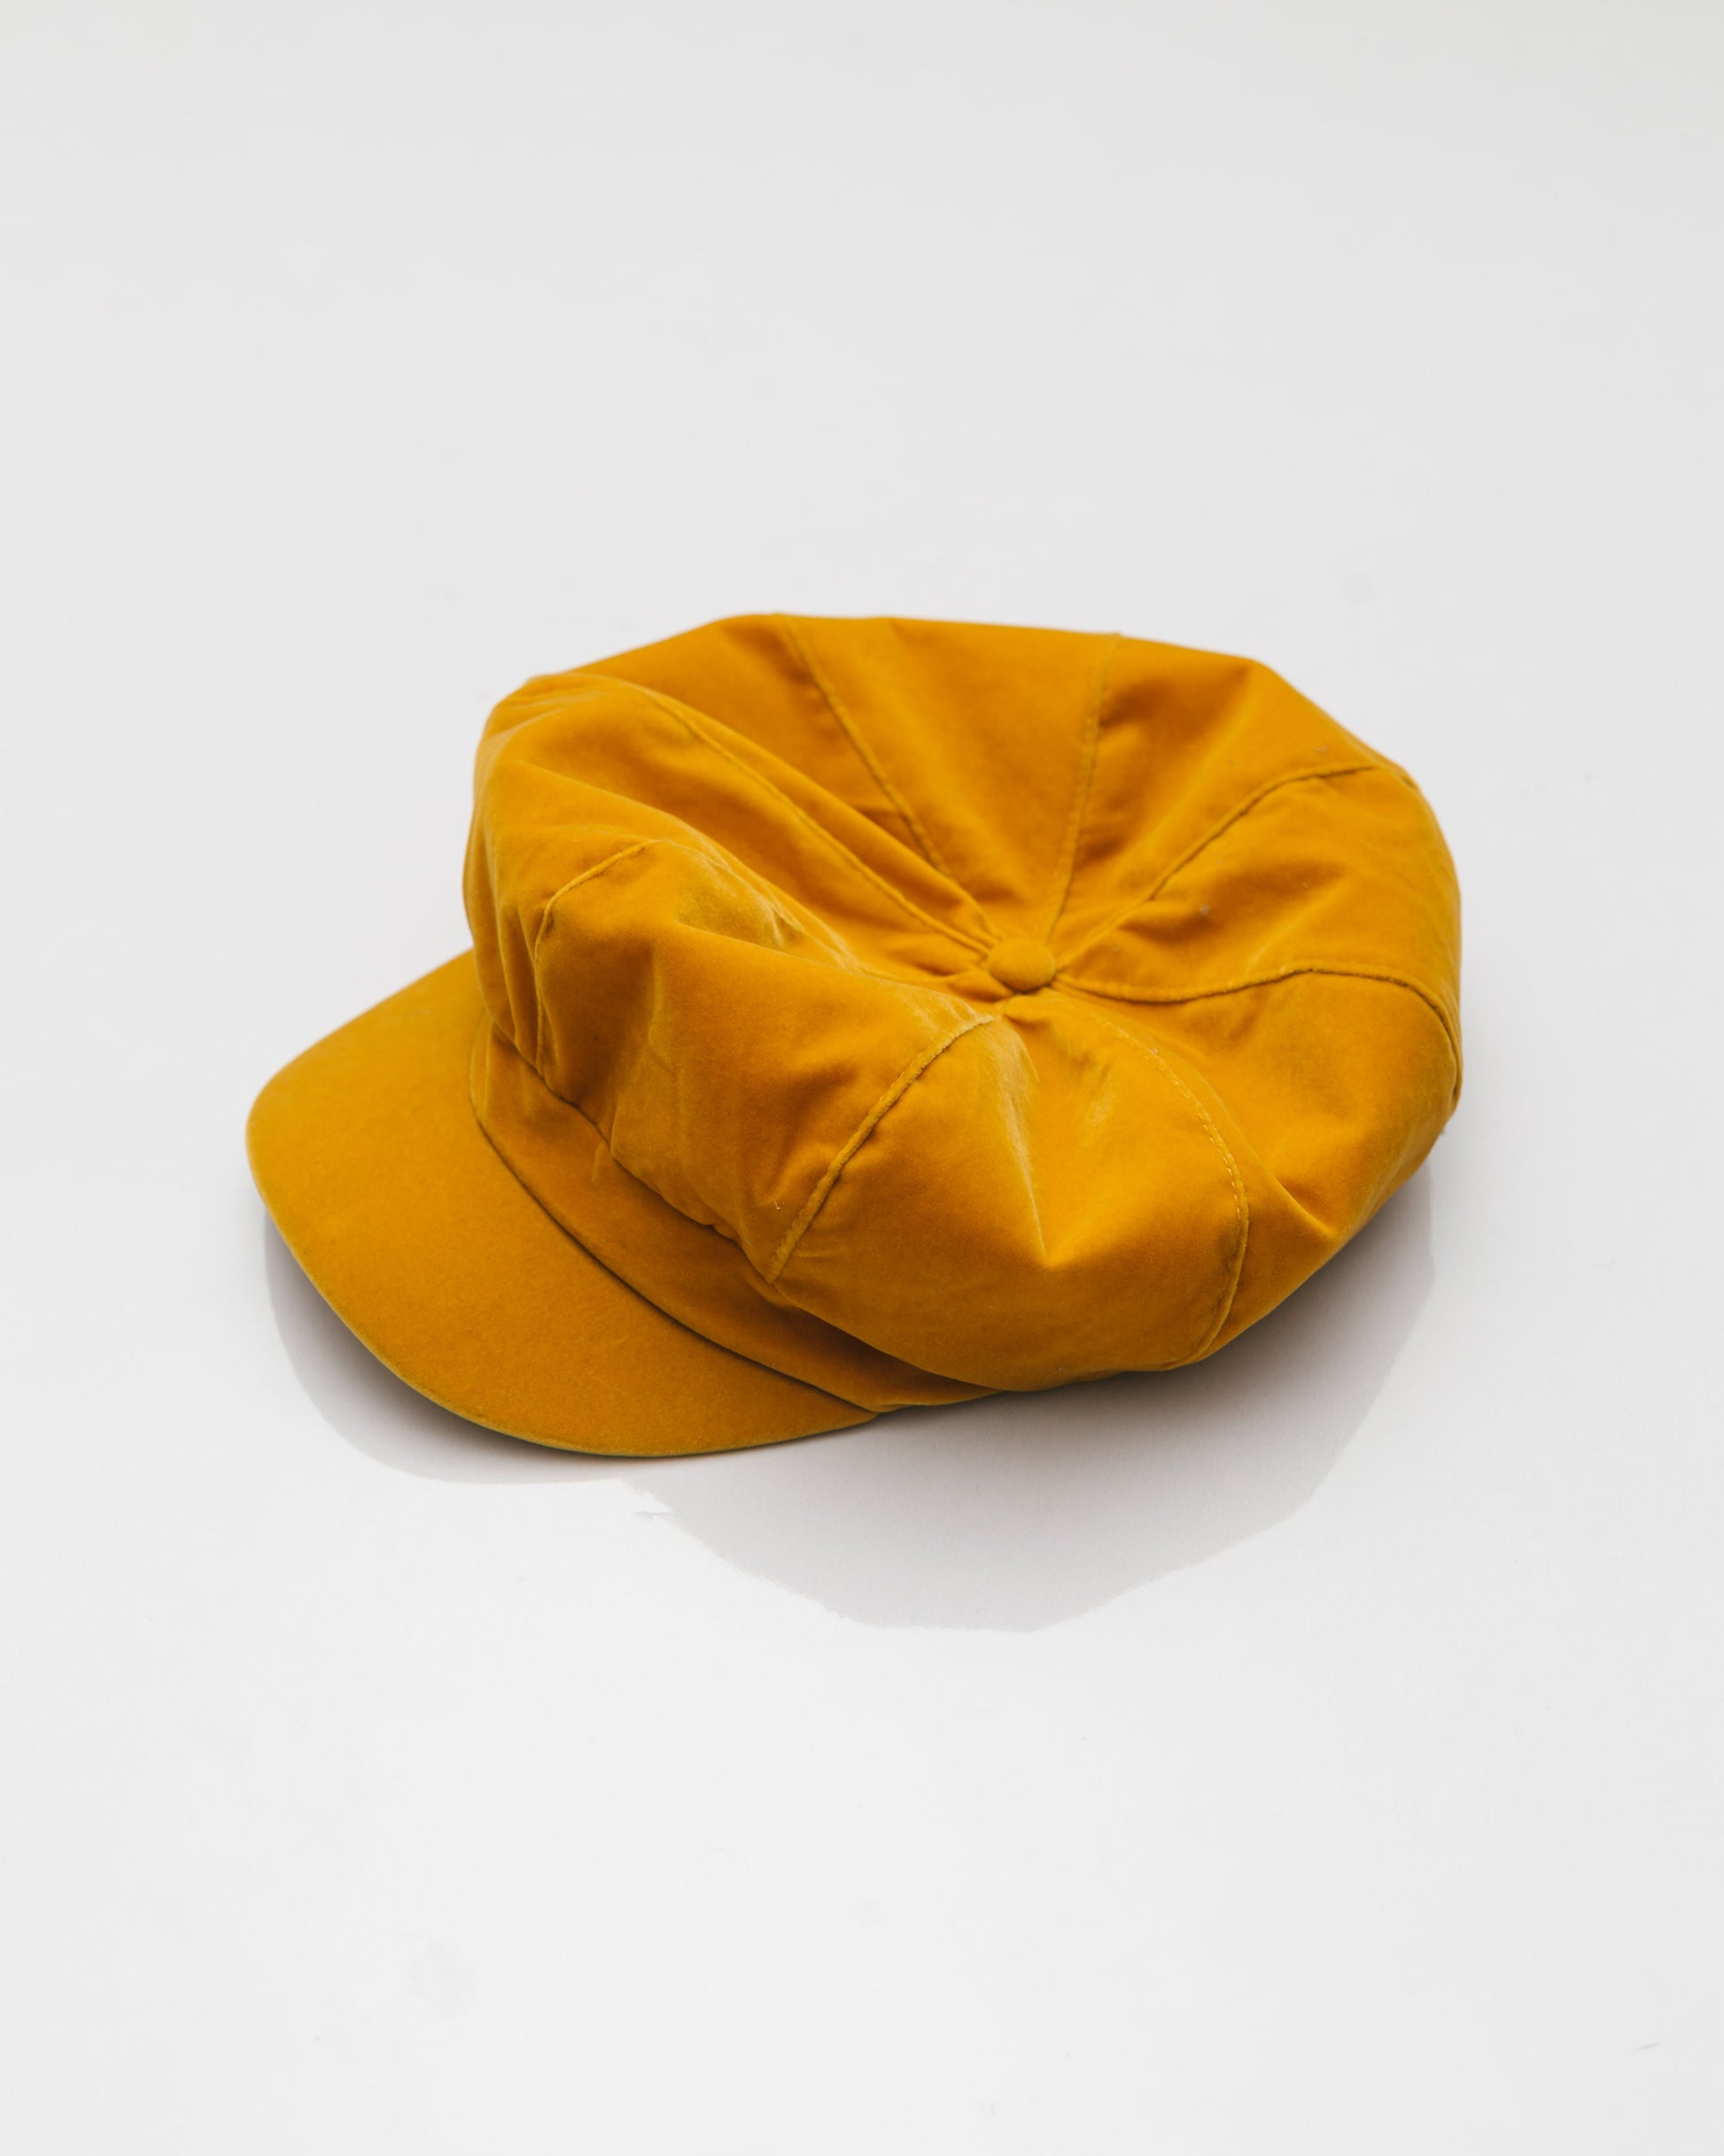 Velvet Hat